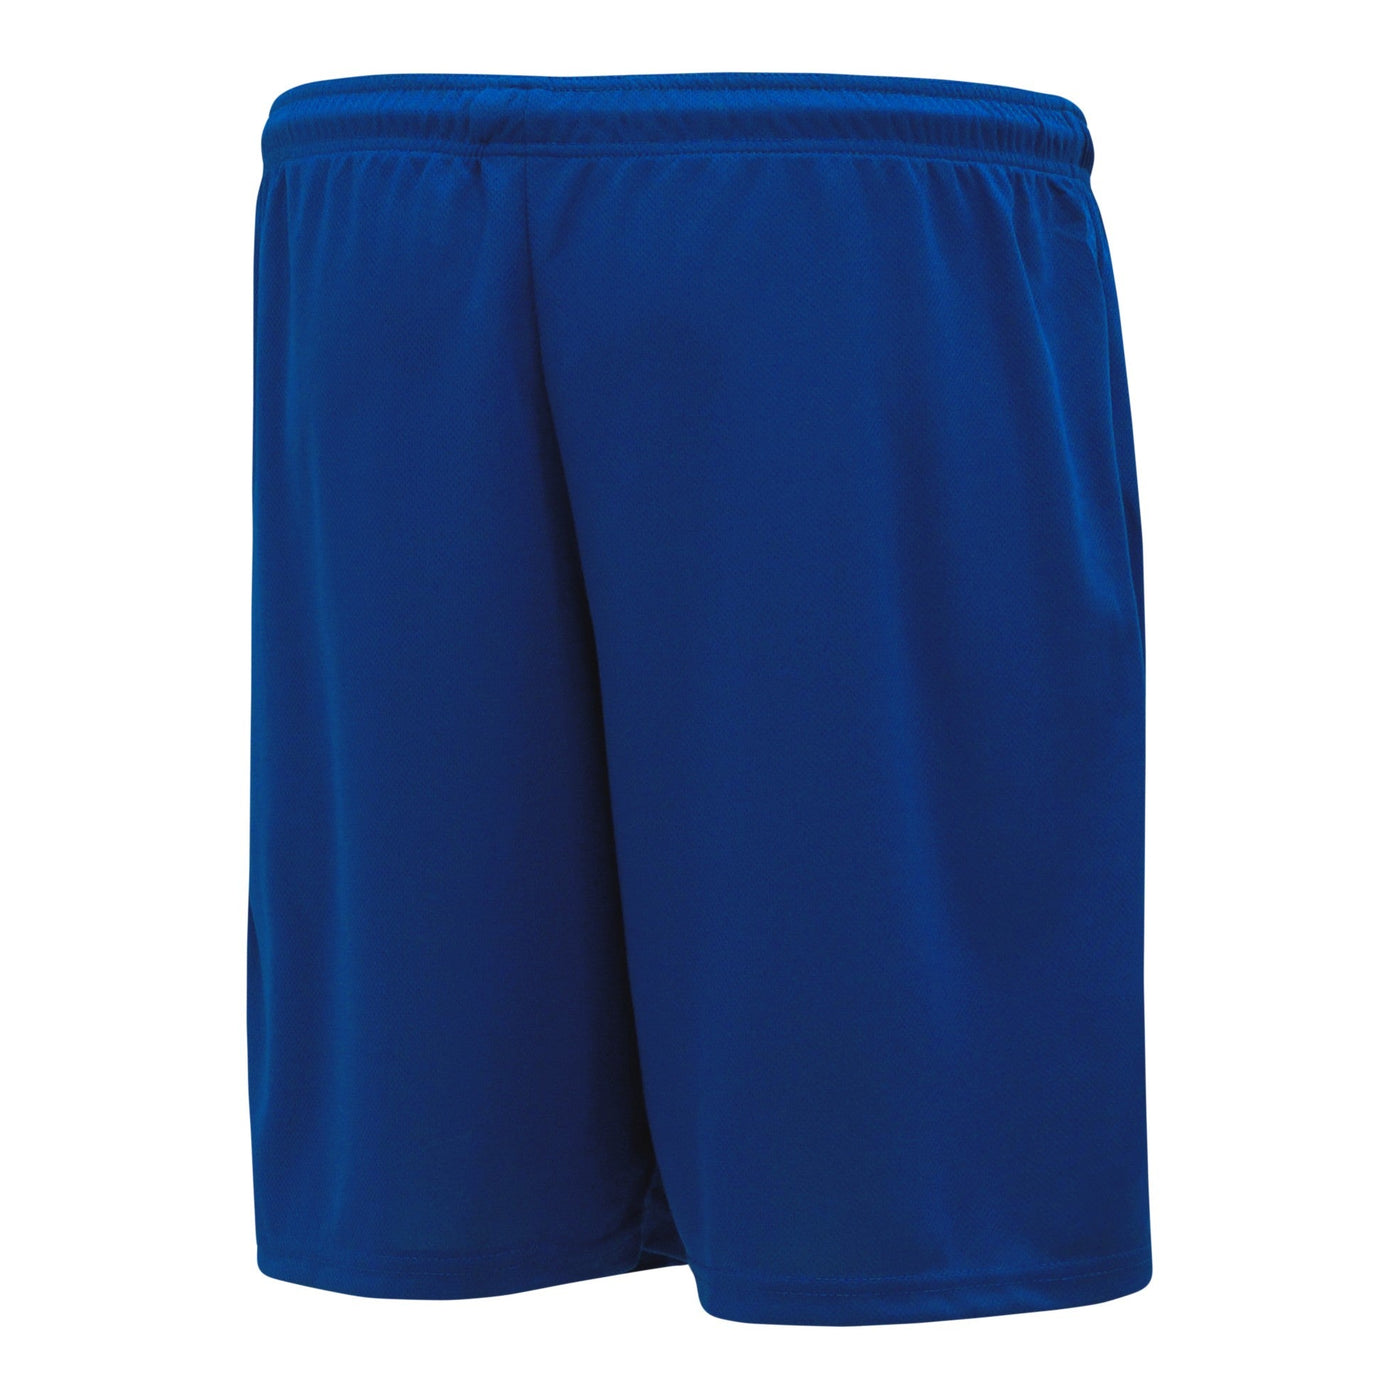 DryFlex Royal Baseball Shorts with Pockets